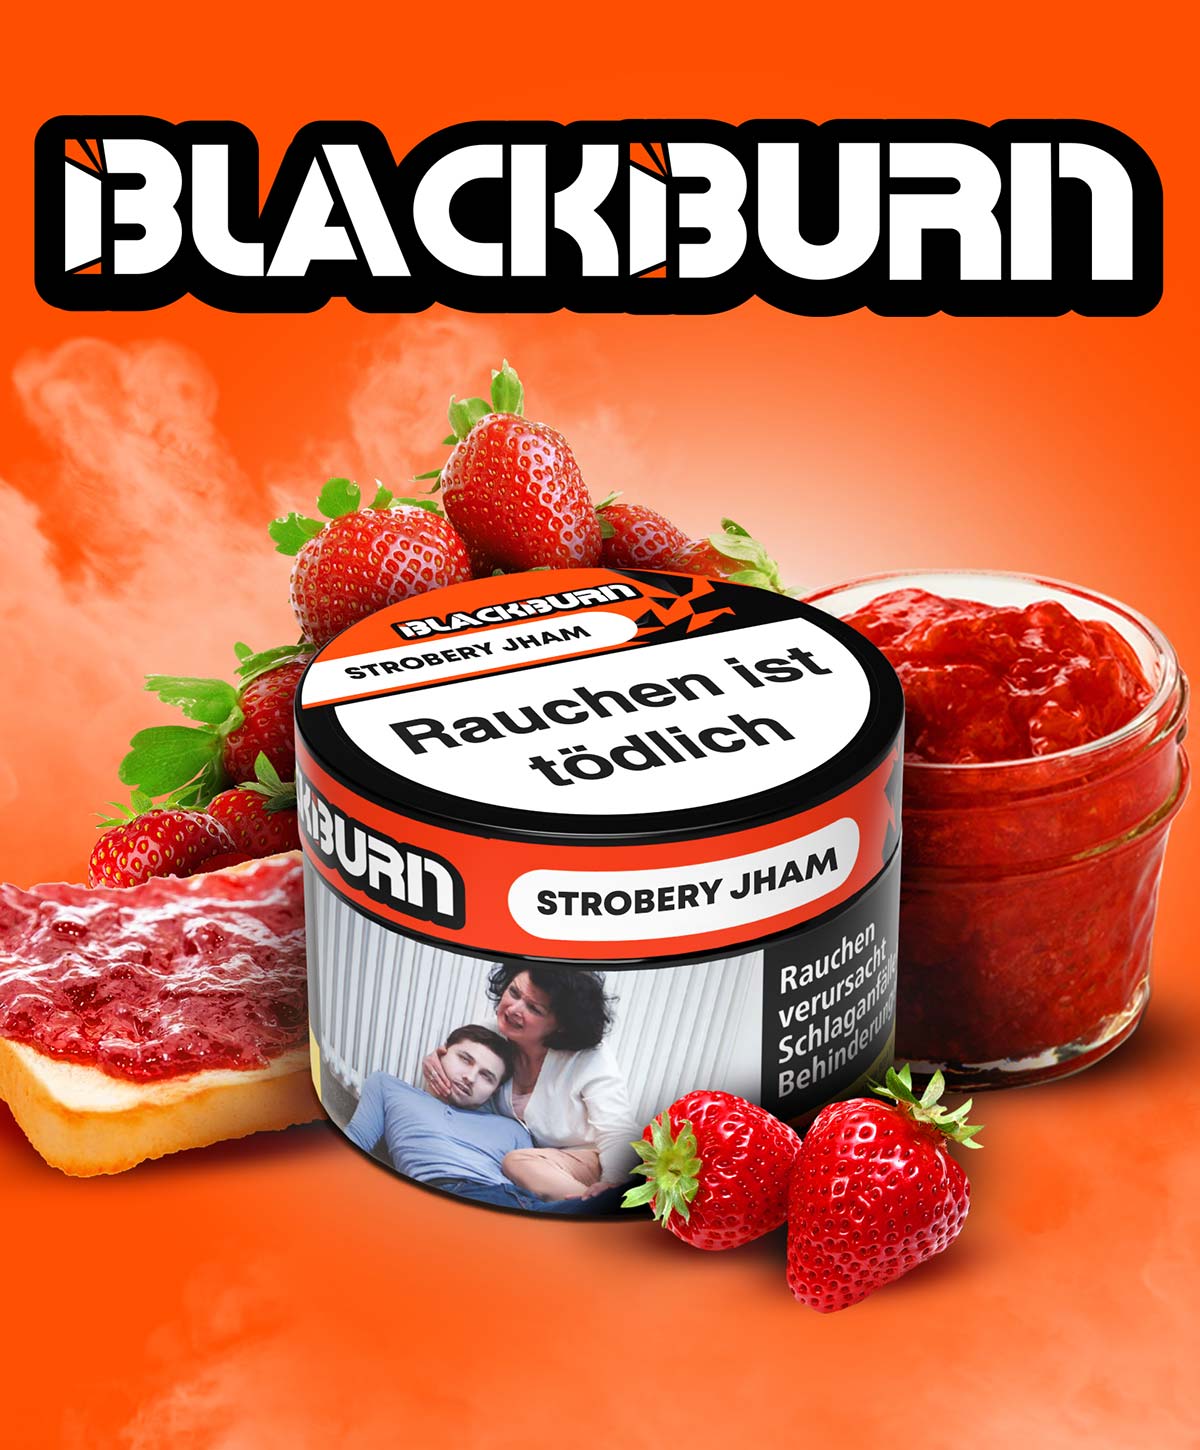 Blackburn Strobery Jham 500g